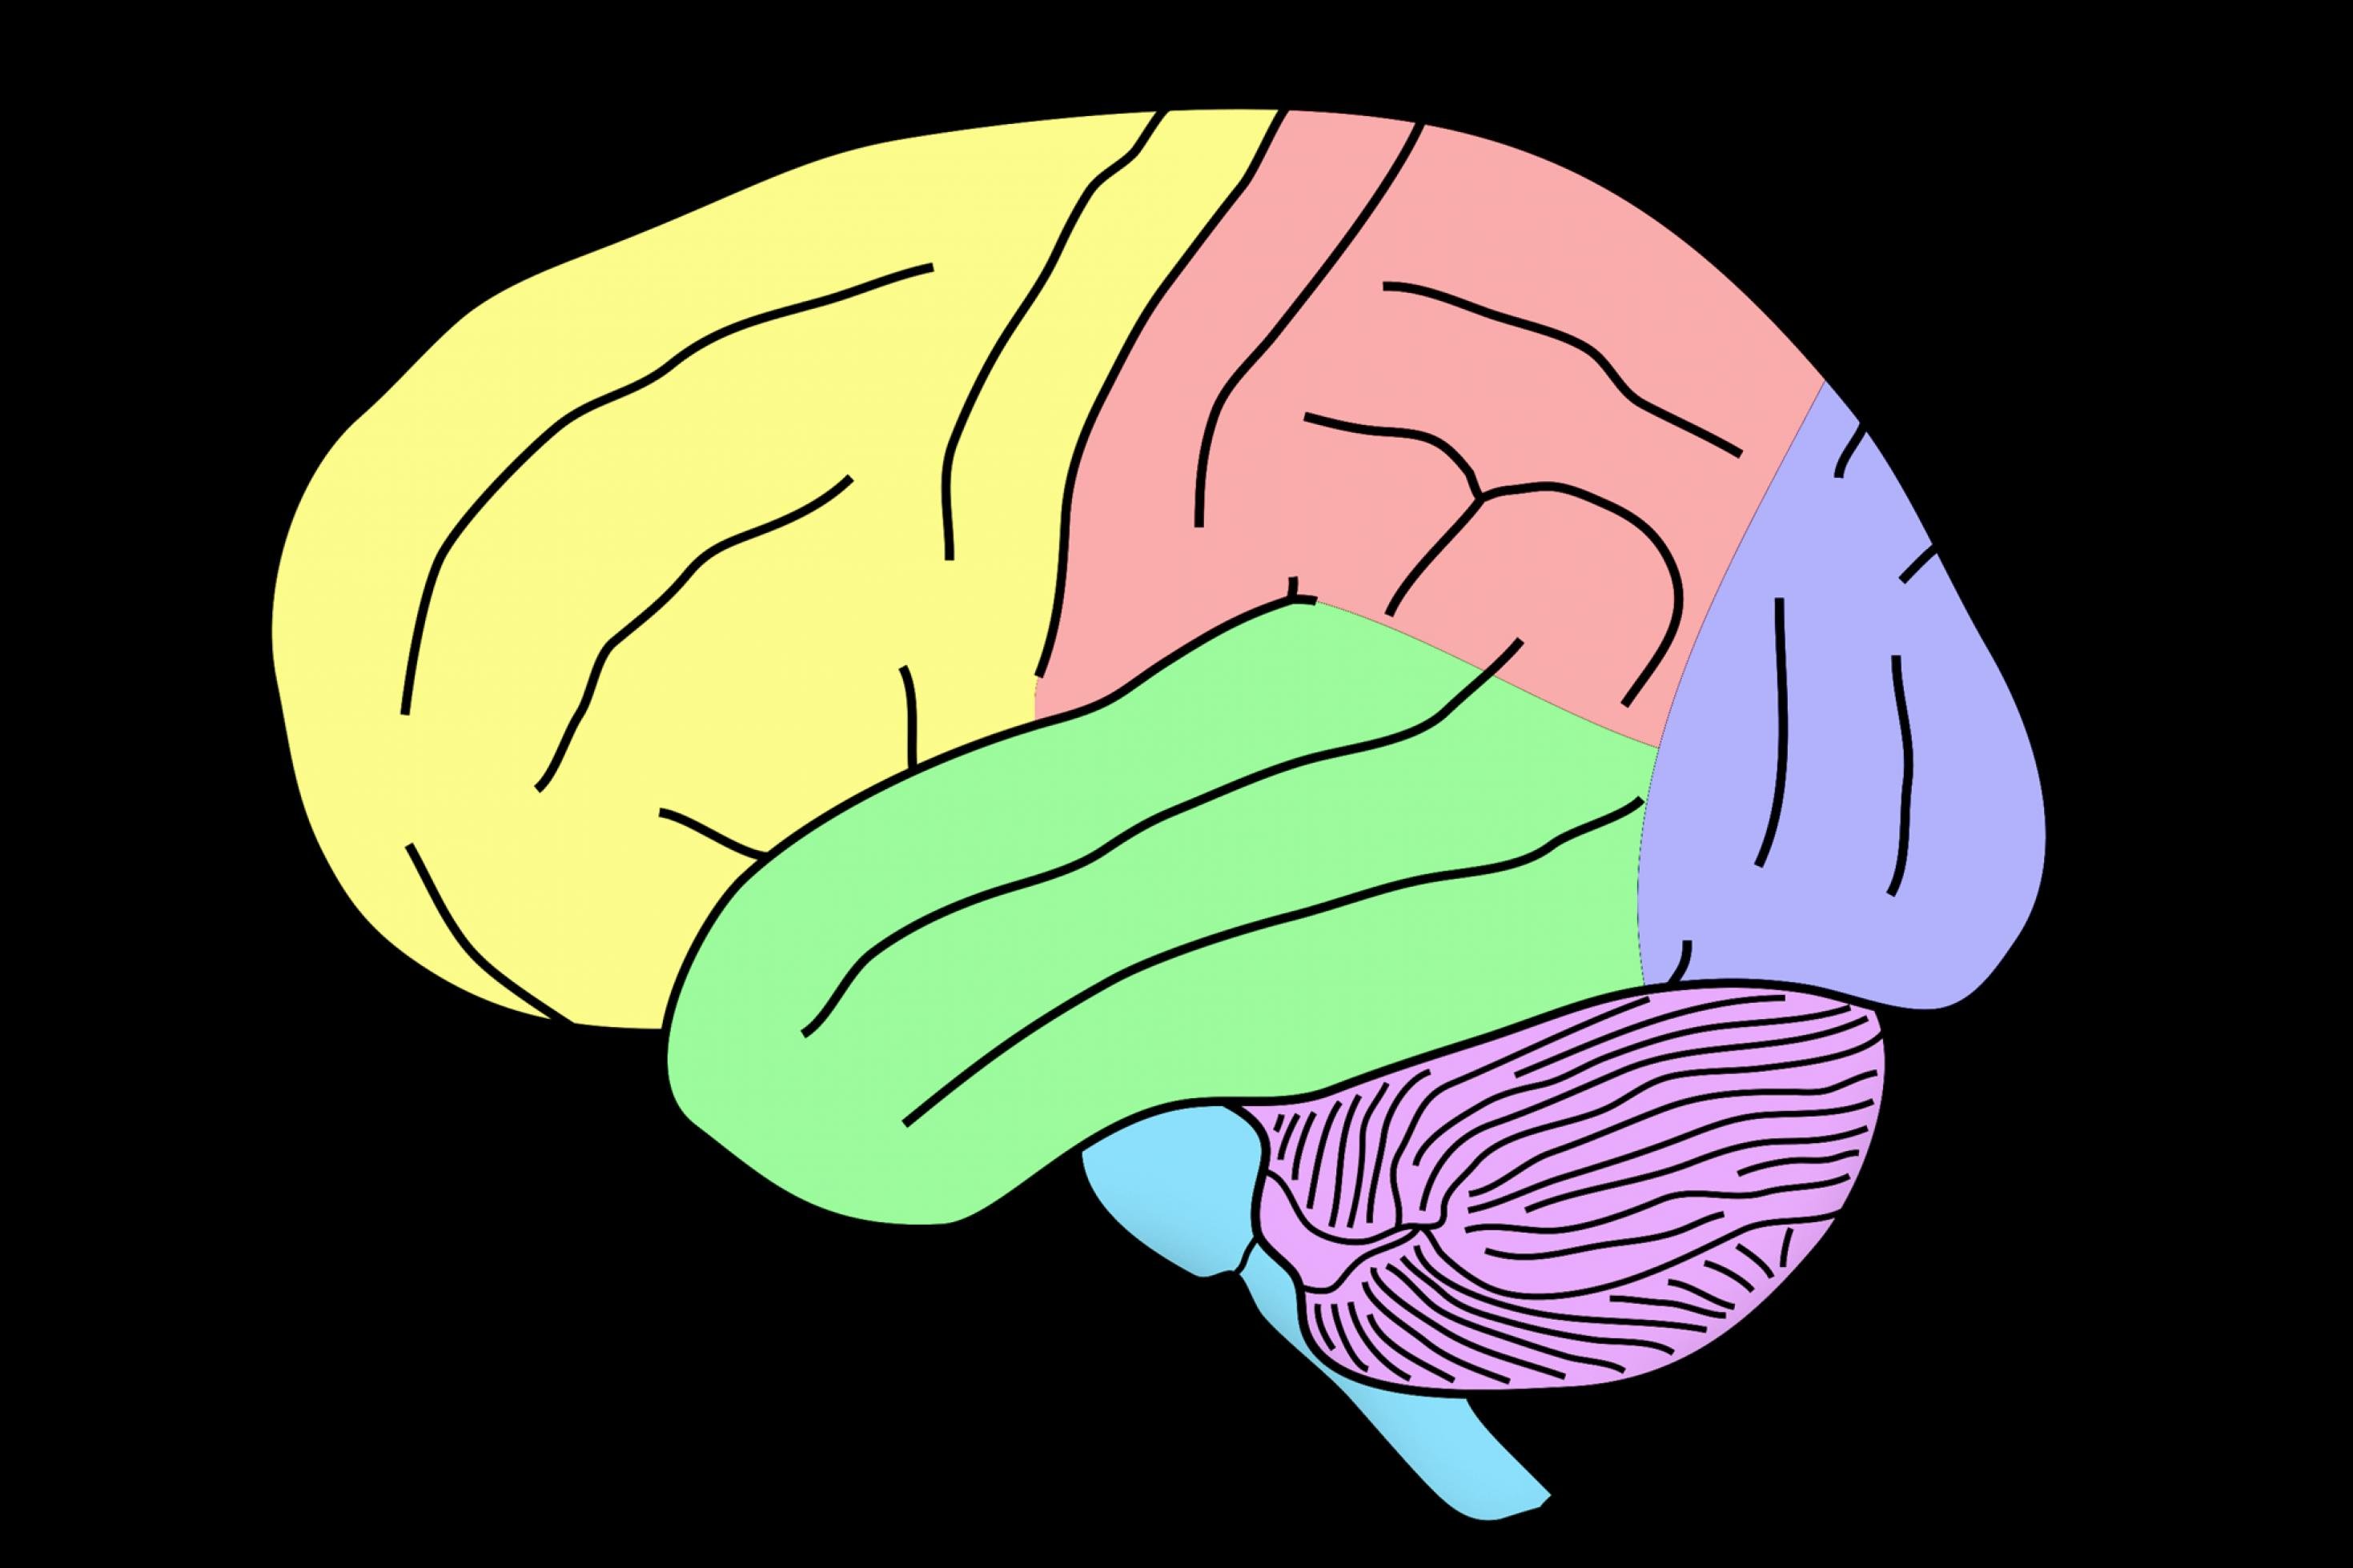 Vor schwarzem Hintergrund ist eine einfache Zeichnung des menschlichen Gehirns zu sehen, in der verschiedene Teile der Großhirnrinde mit unterschiedlichen Farben markiert sind.